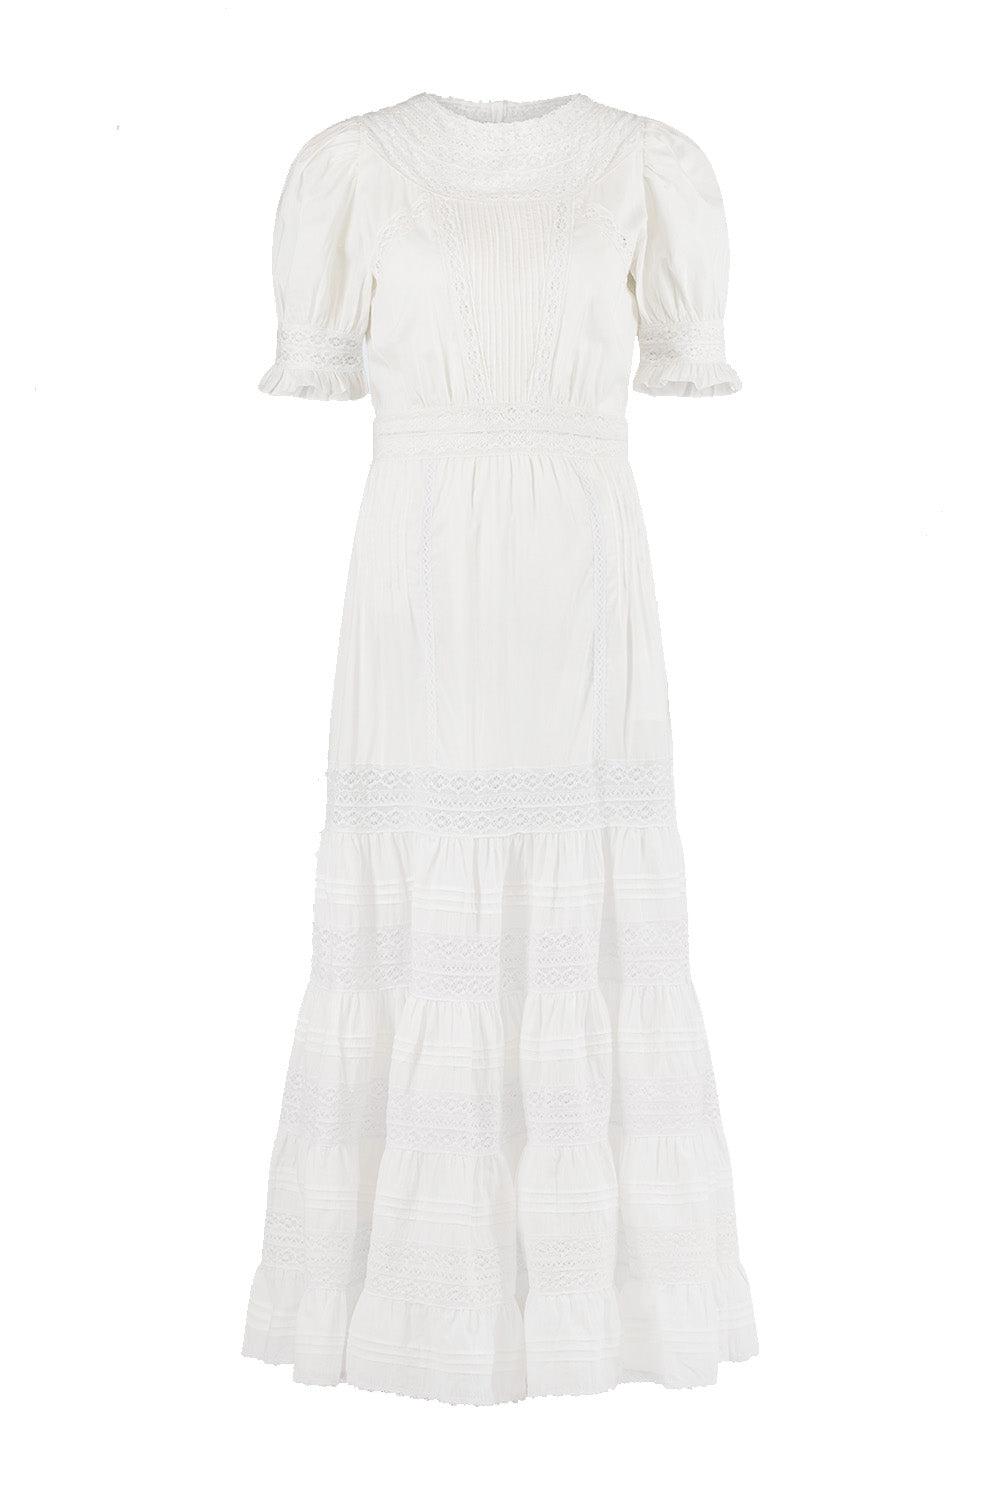 Mio Dress White